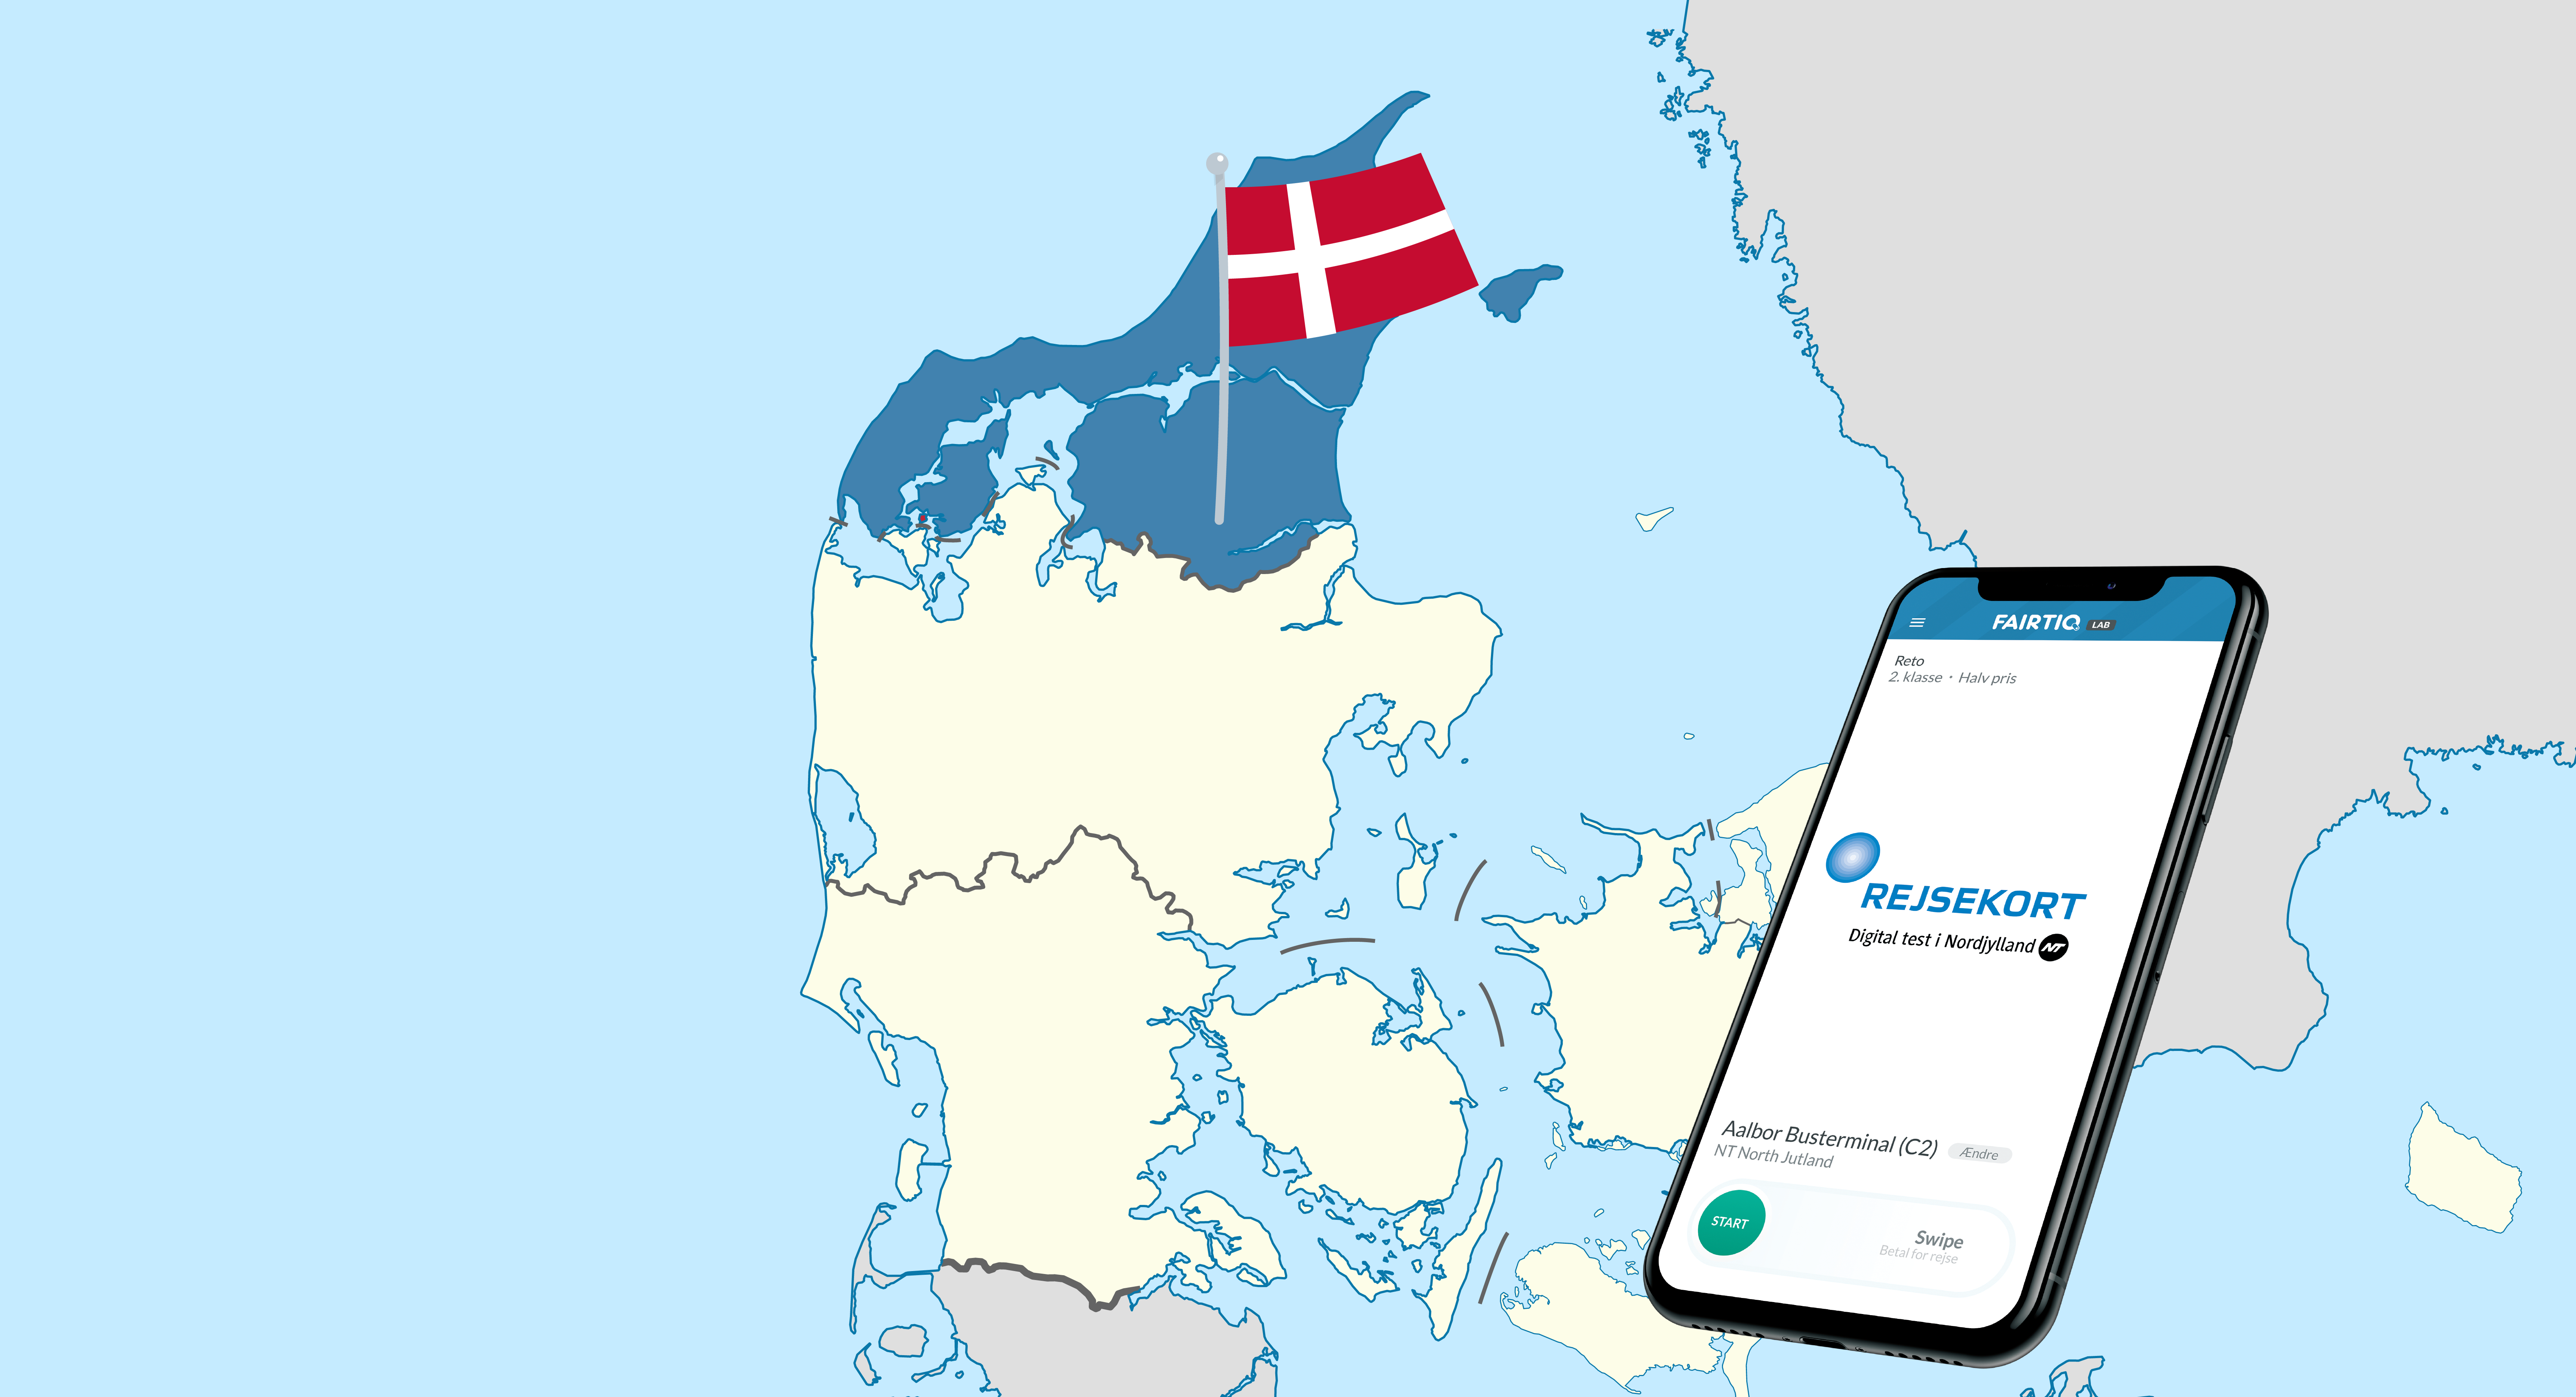 Erfolgreicher Start des digitalen Ticketing-Projekts in Dänemark